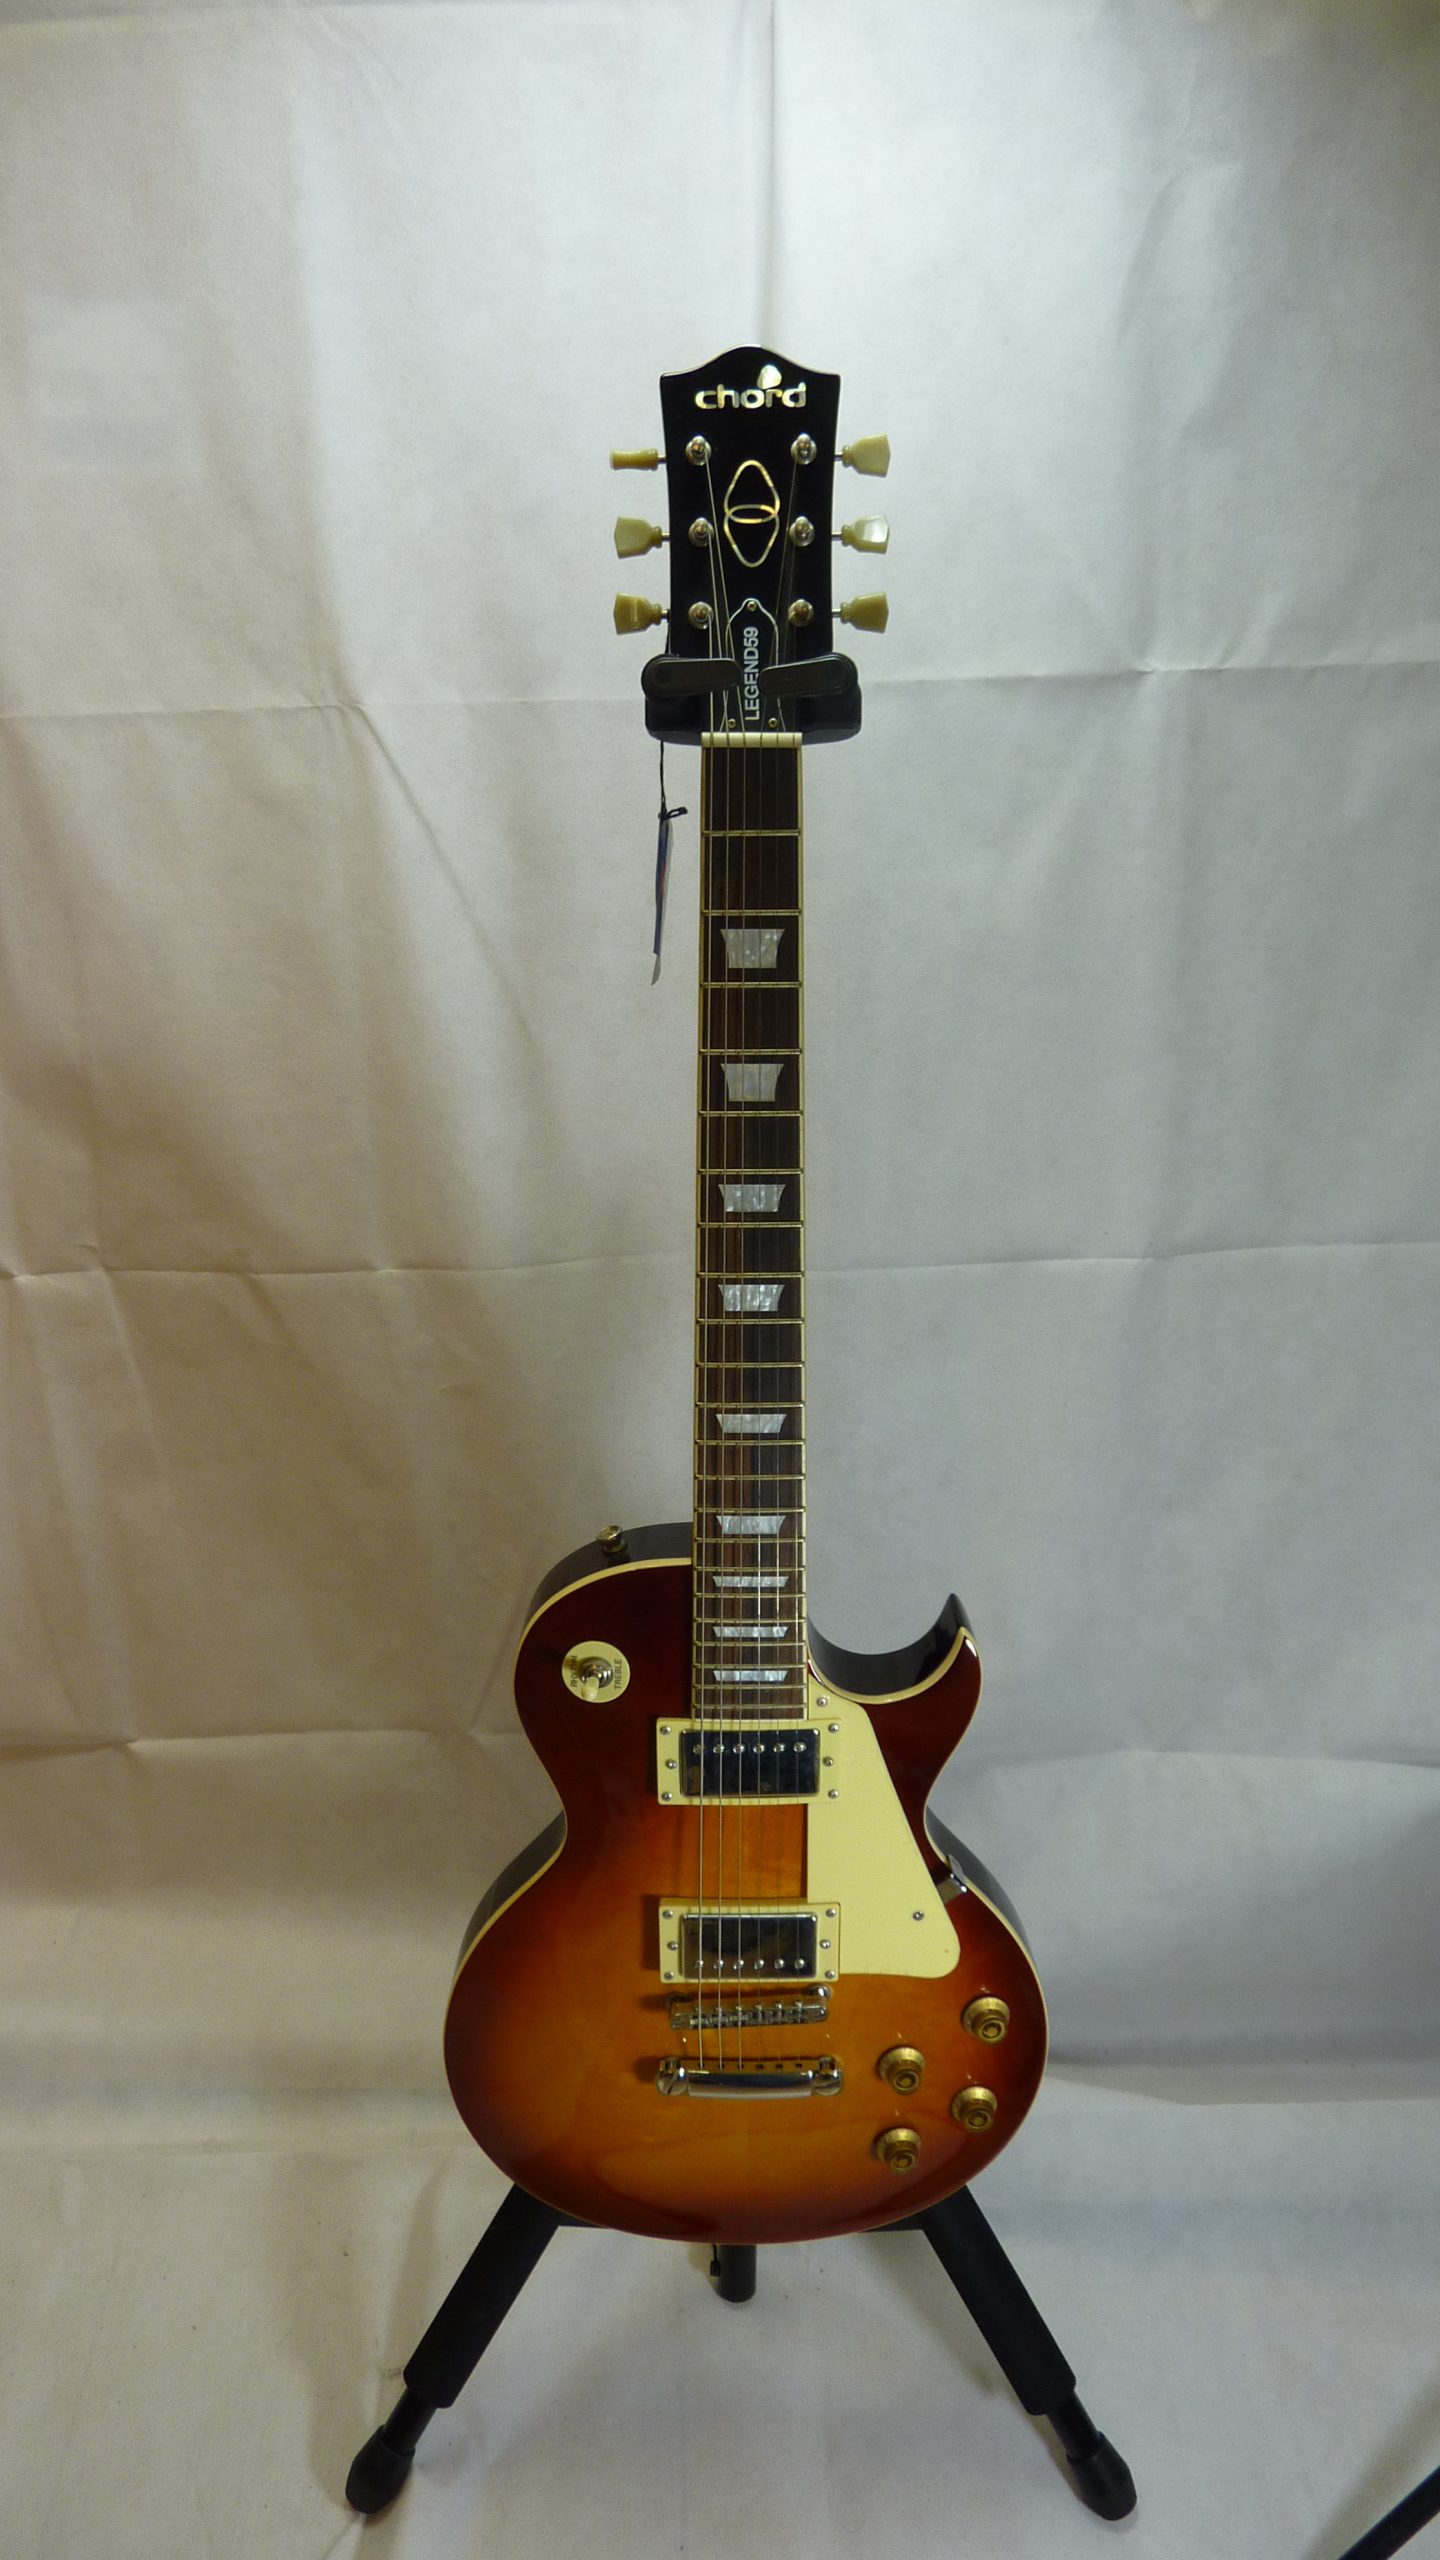 Chord Legend59 Les Paul Style Guitar